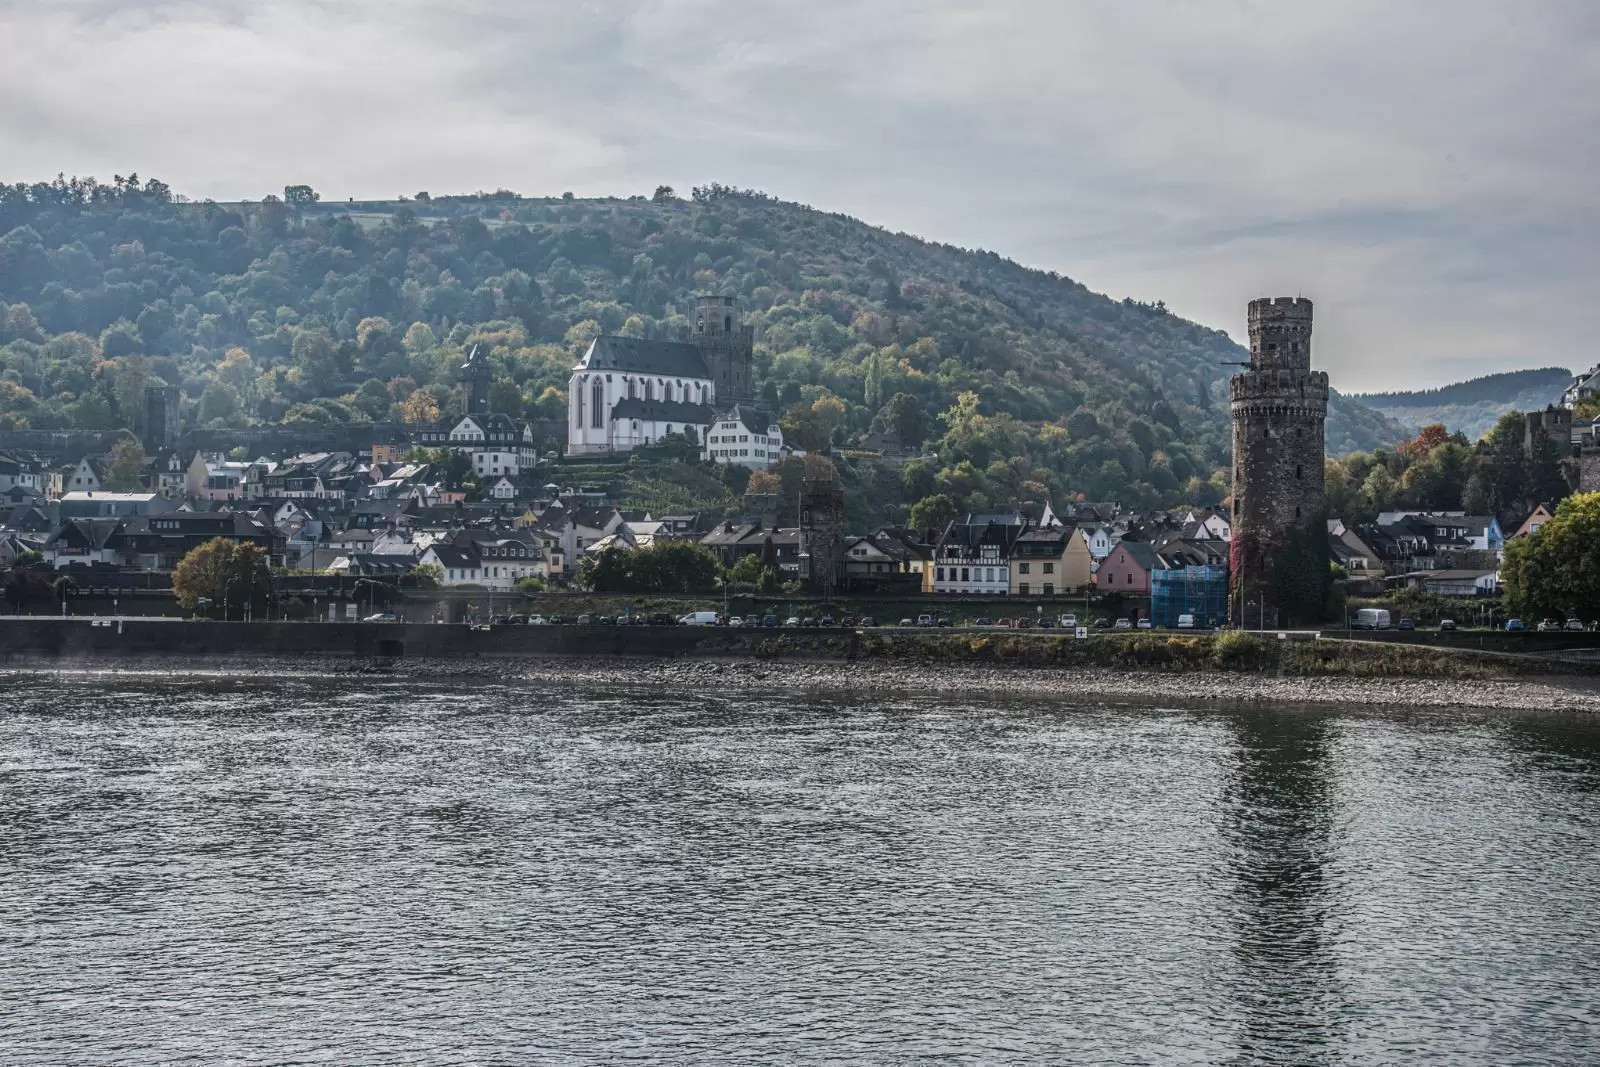 Kaub on the Rhine